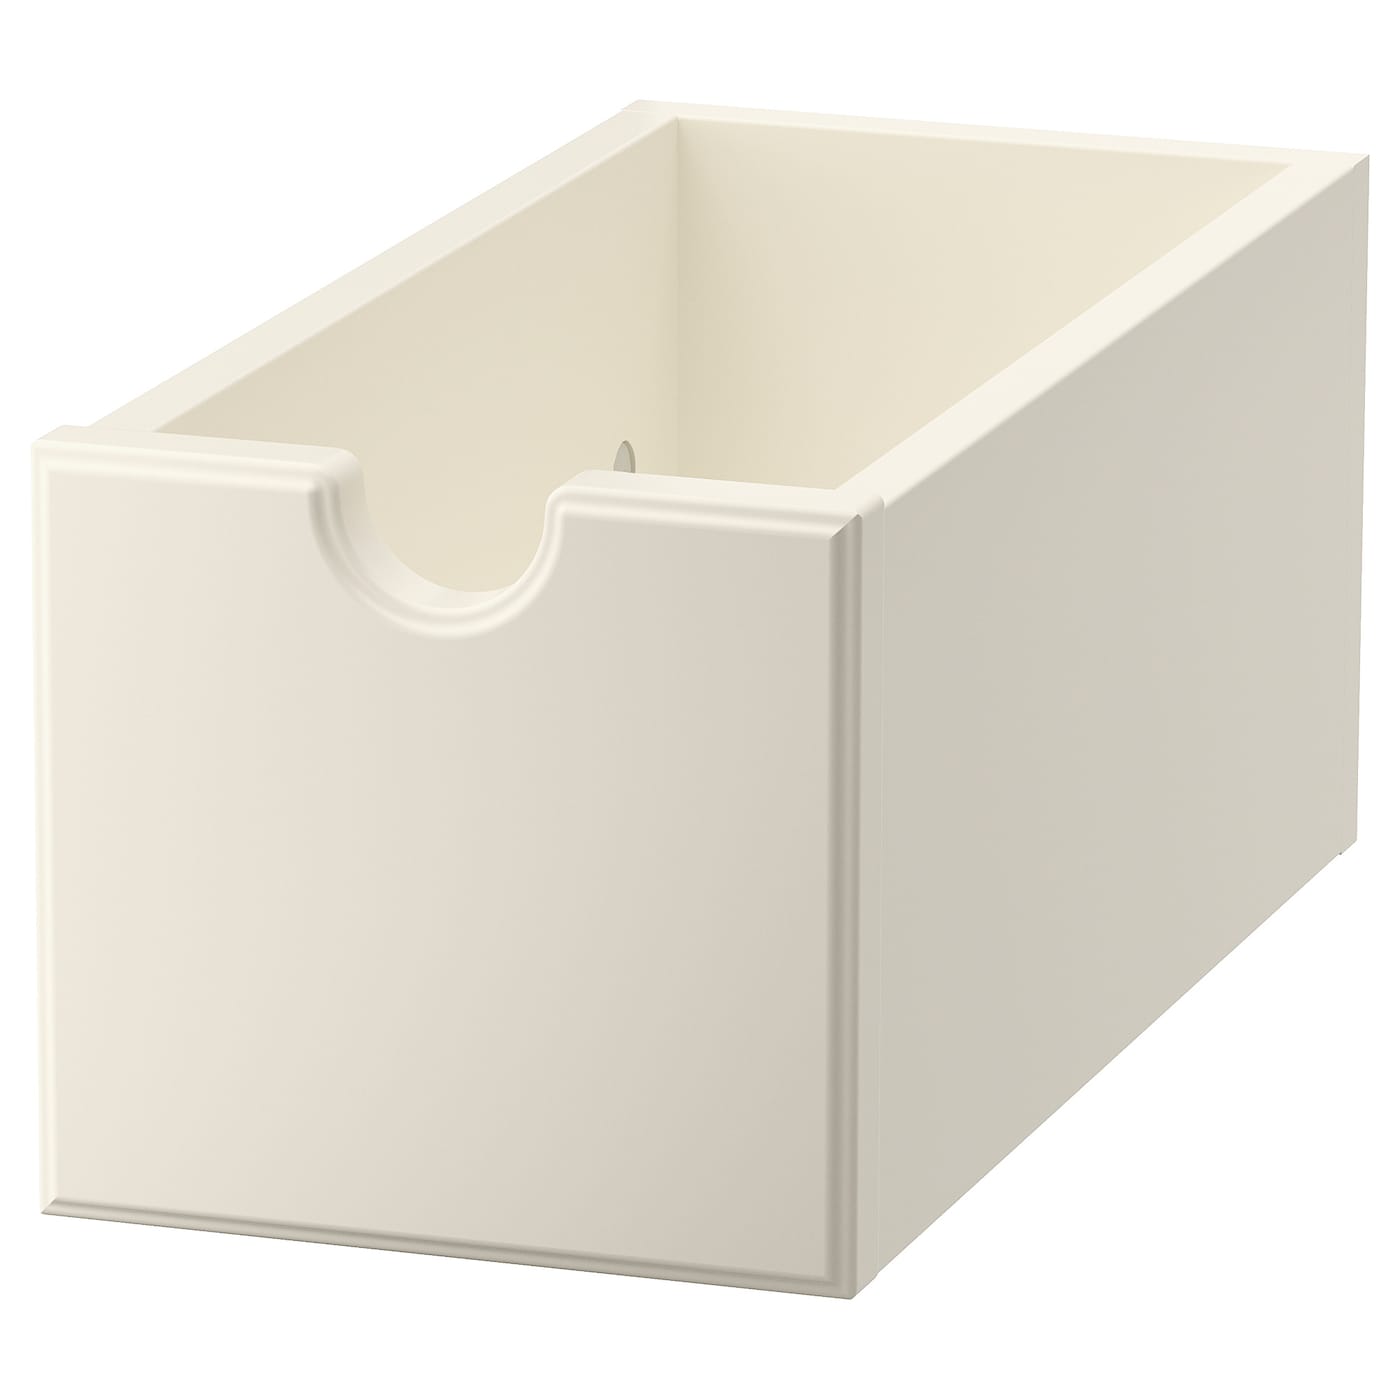 Коробка - TORNVIKEN IKEA/ ТОРНВИКЕН  ИКЕА, 15х16 см, бежевый